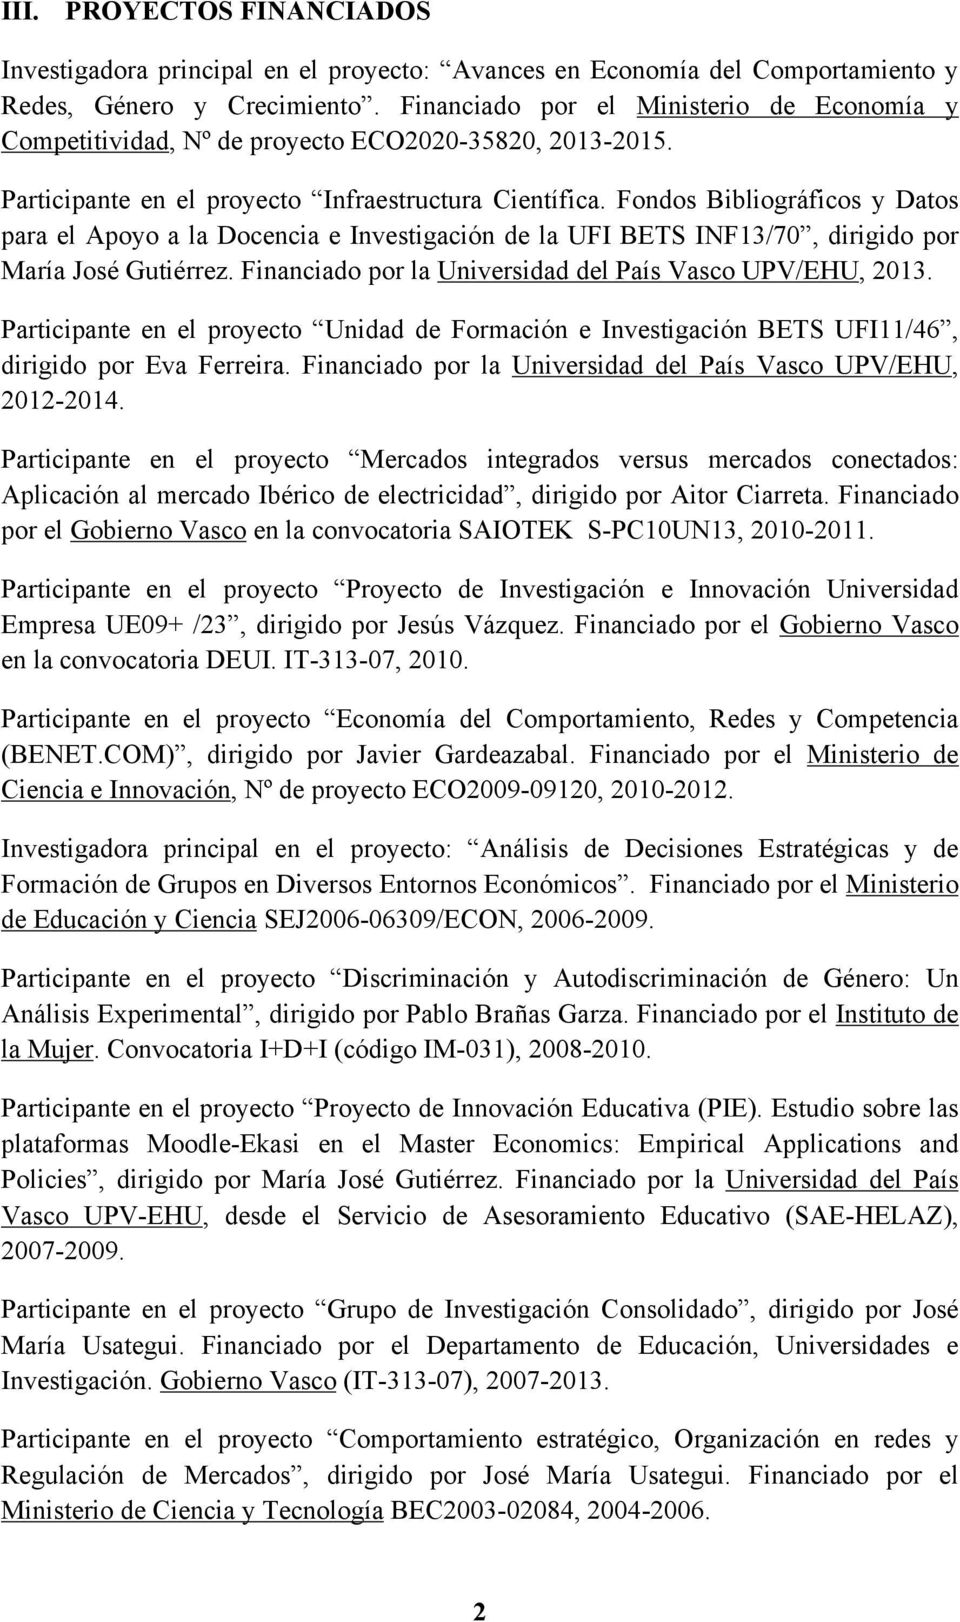 Fondos Bibliográficos y Datos para el Apoyo a la Docencia e Investigación de la UFI BETS INF13/70, dirigido por María José Gutiérrez. Financiado por la, 2013.